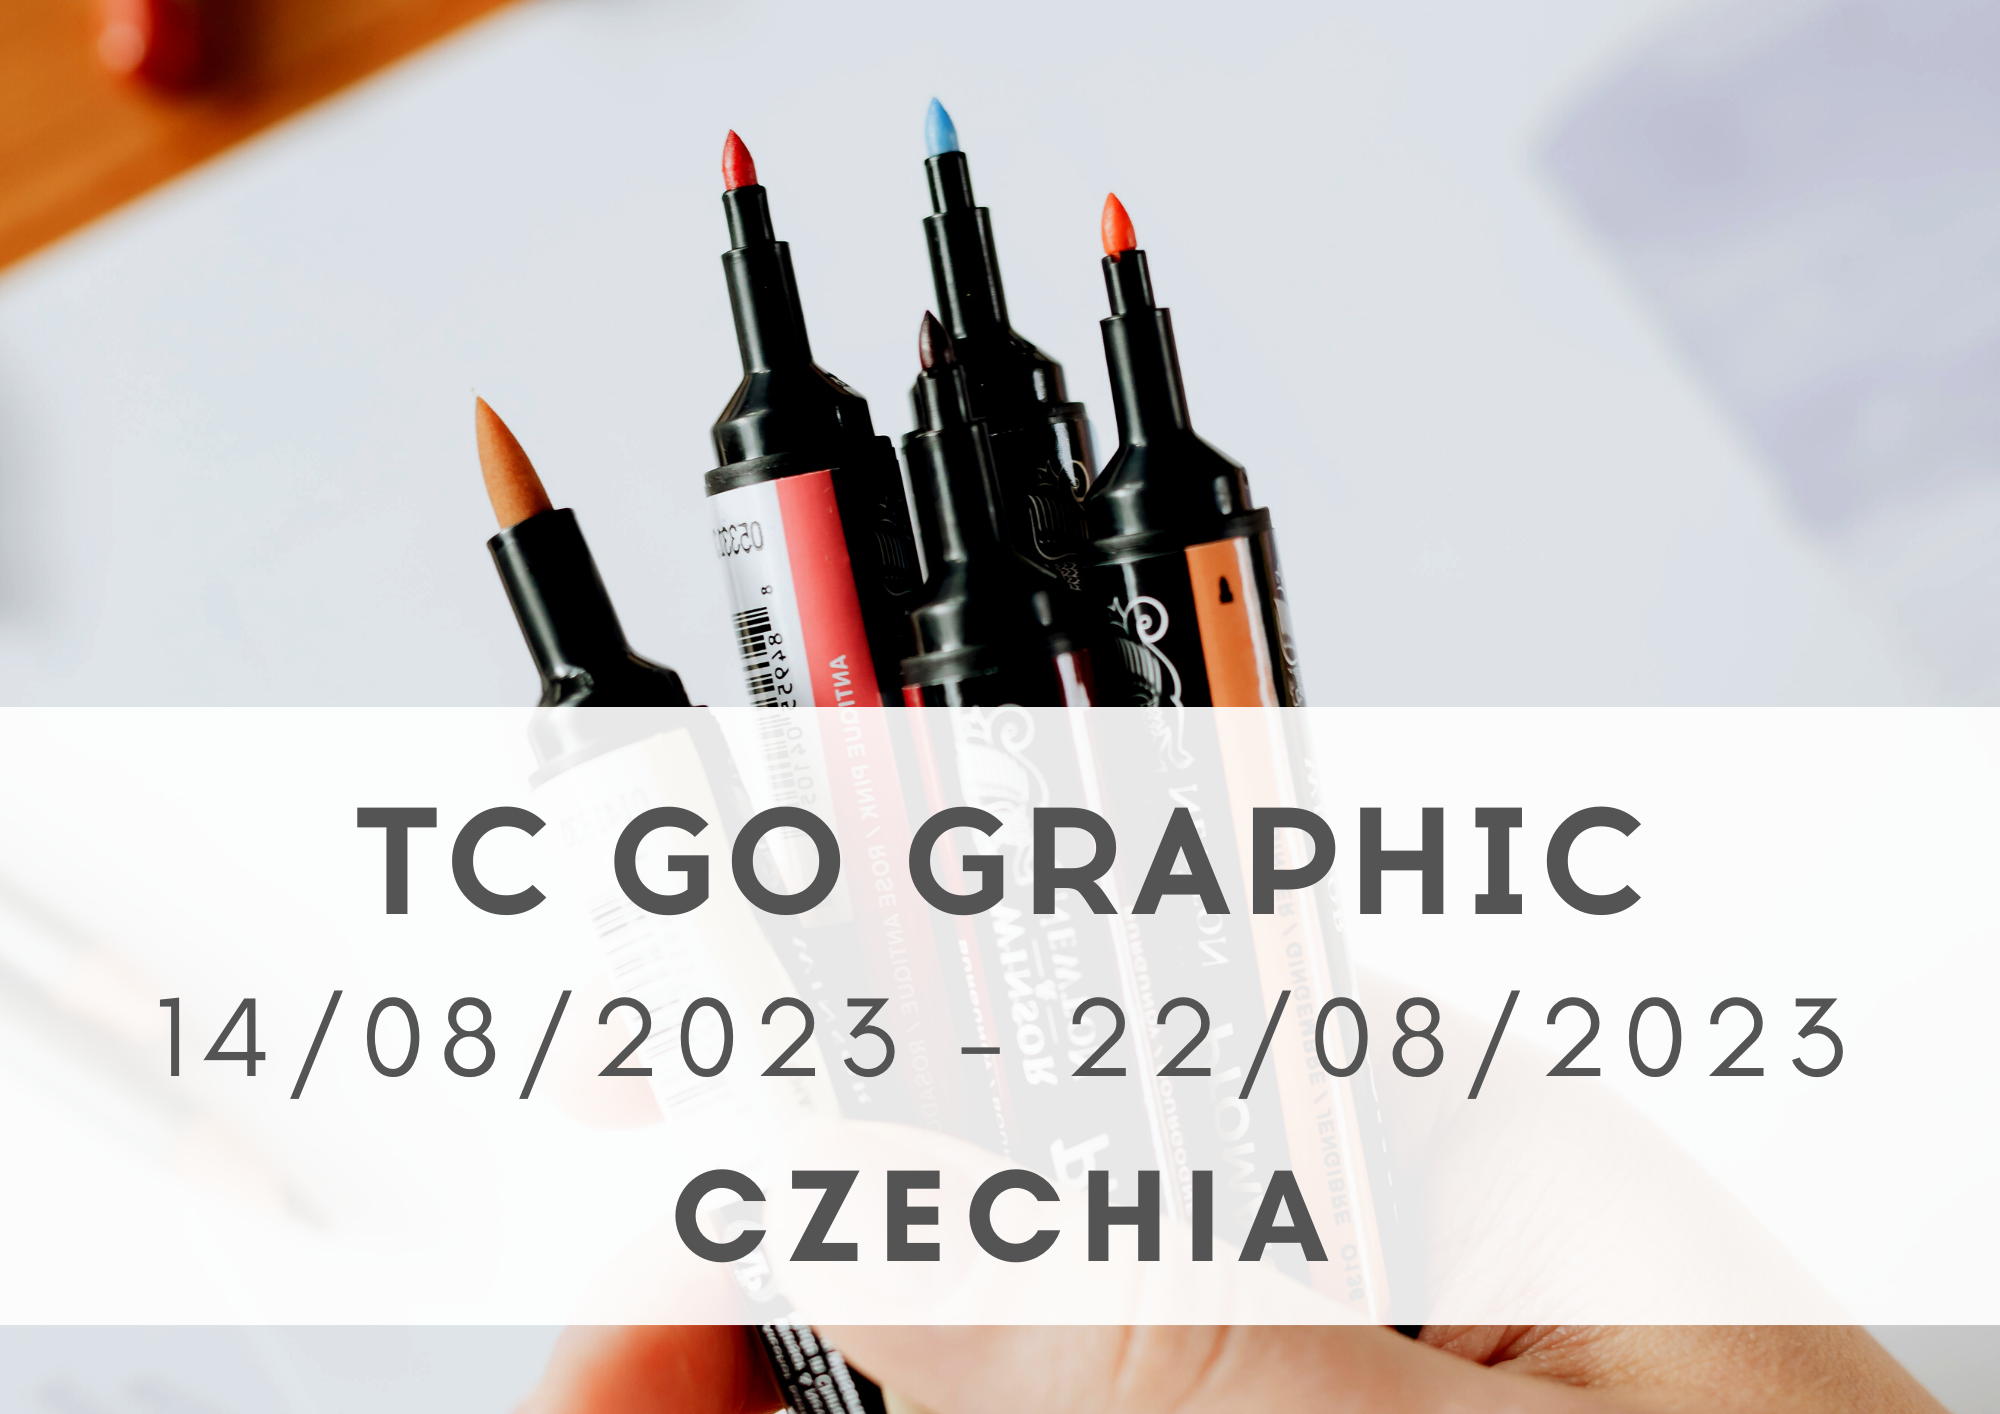 TC Go Graphic, 14-22/08/2023, Czechia